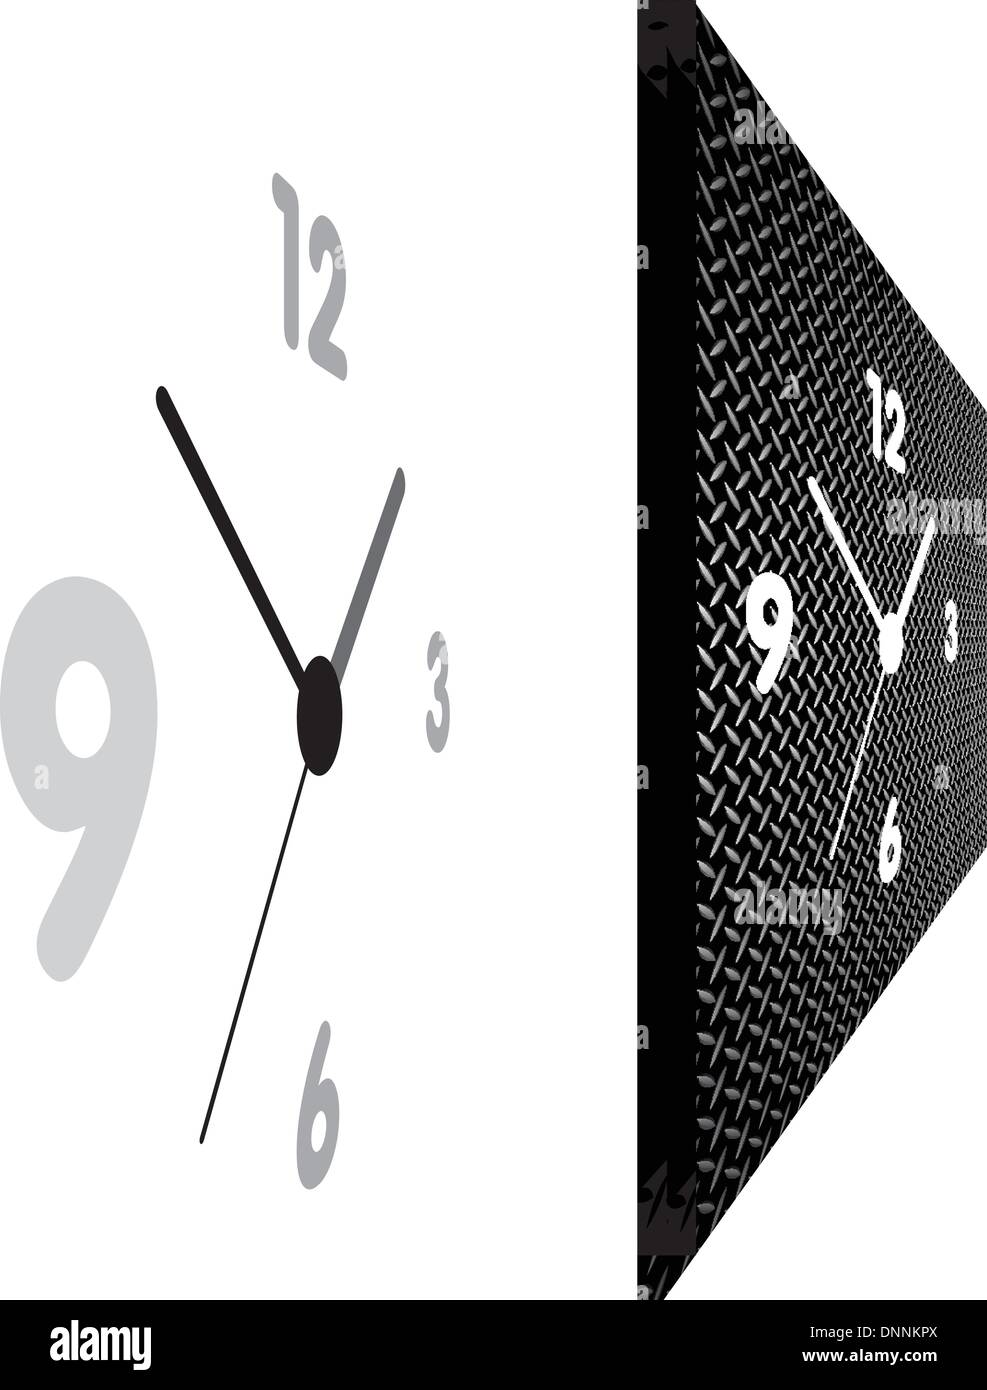 Uhr in der perspektivischen Ansicht in zwei Varianten Stock Vektor